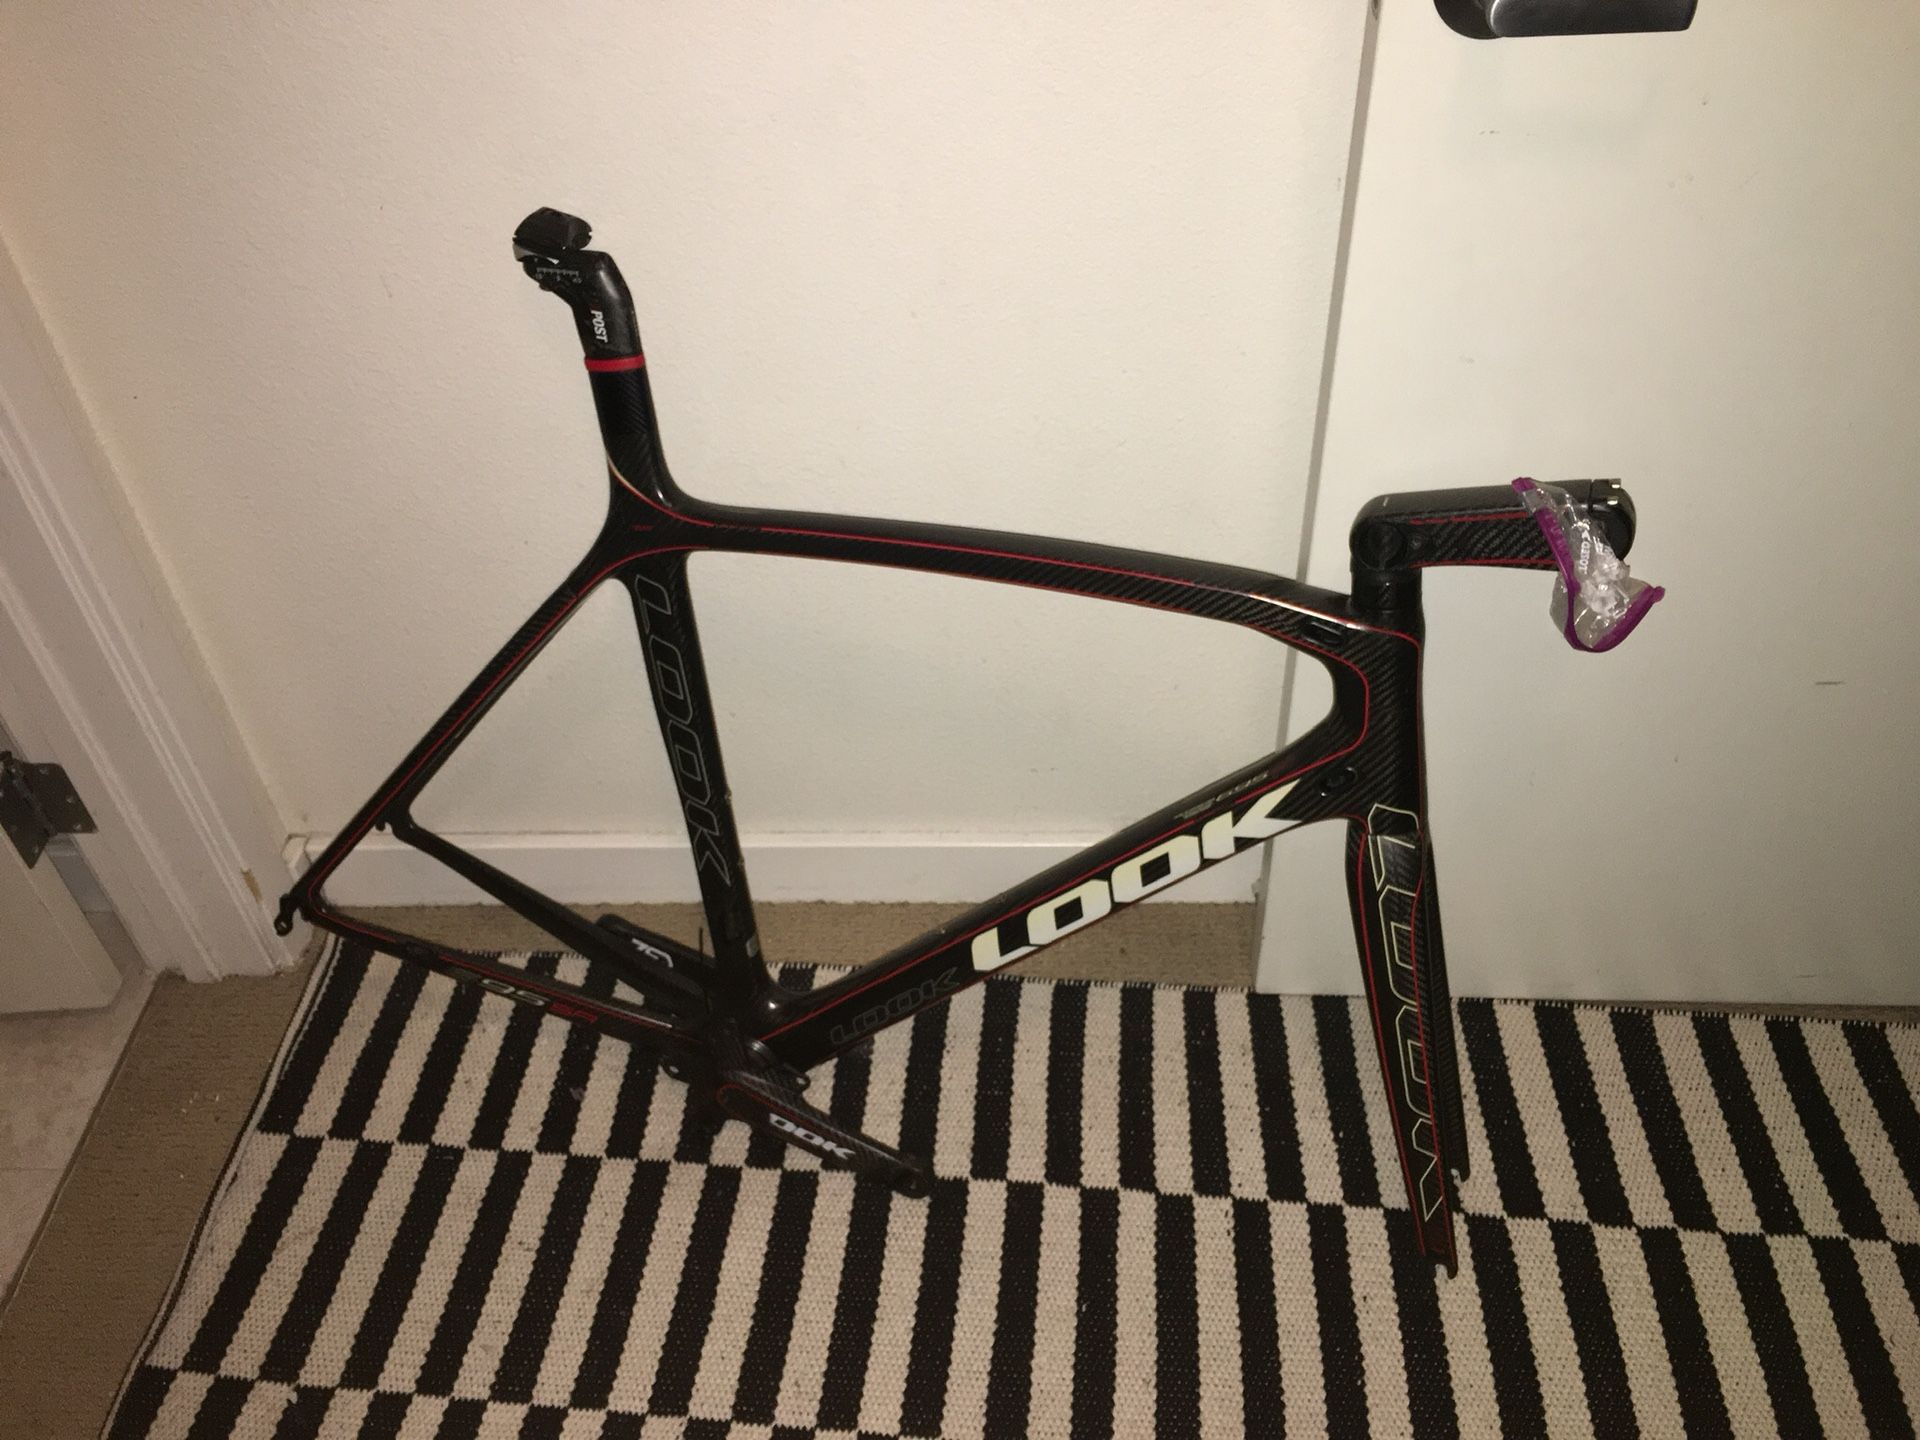 Full carbon road bike frame